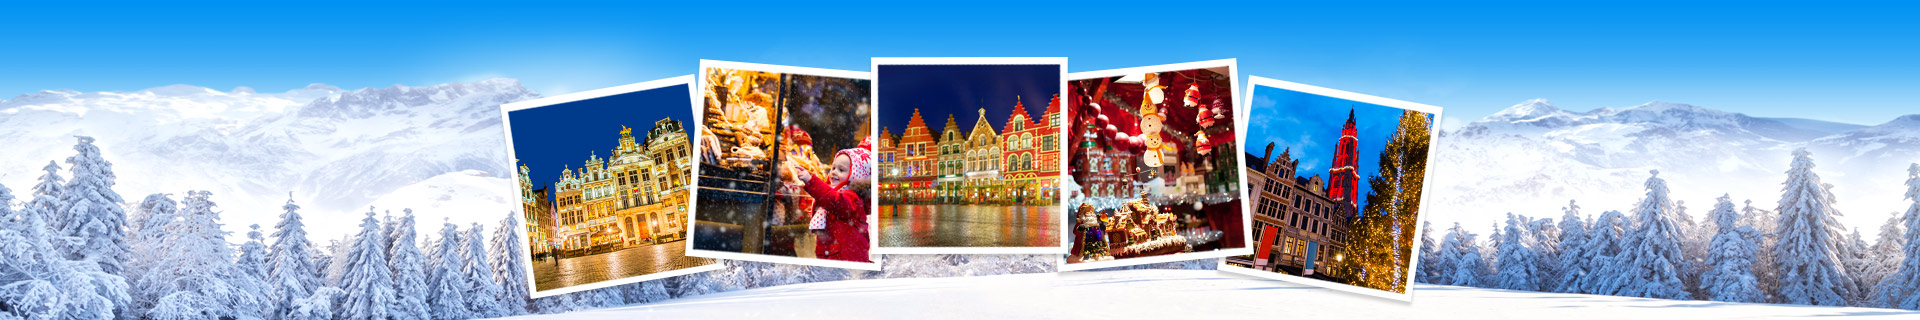 Kerstmarkten in Belgie